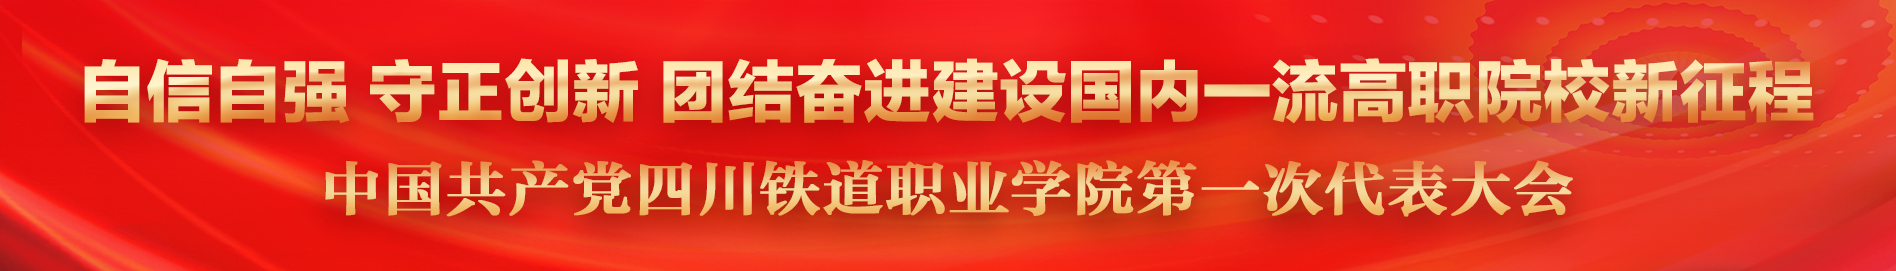 中国共产党bwin体育必赢第一次代表大会